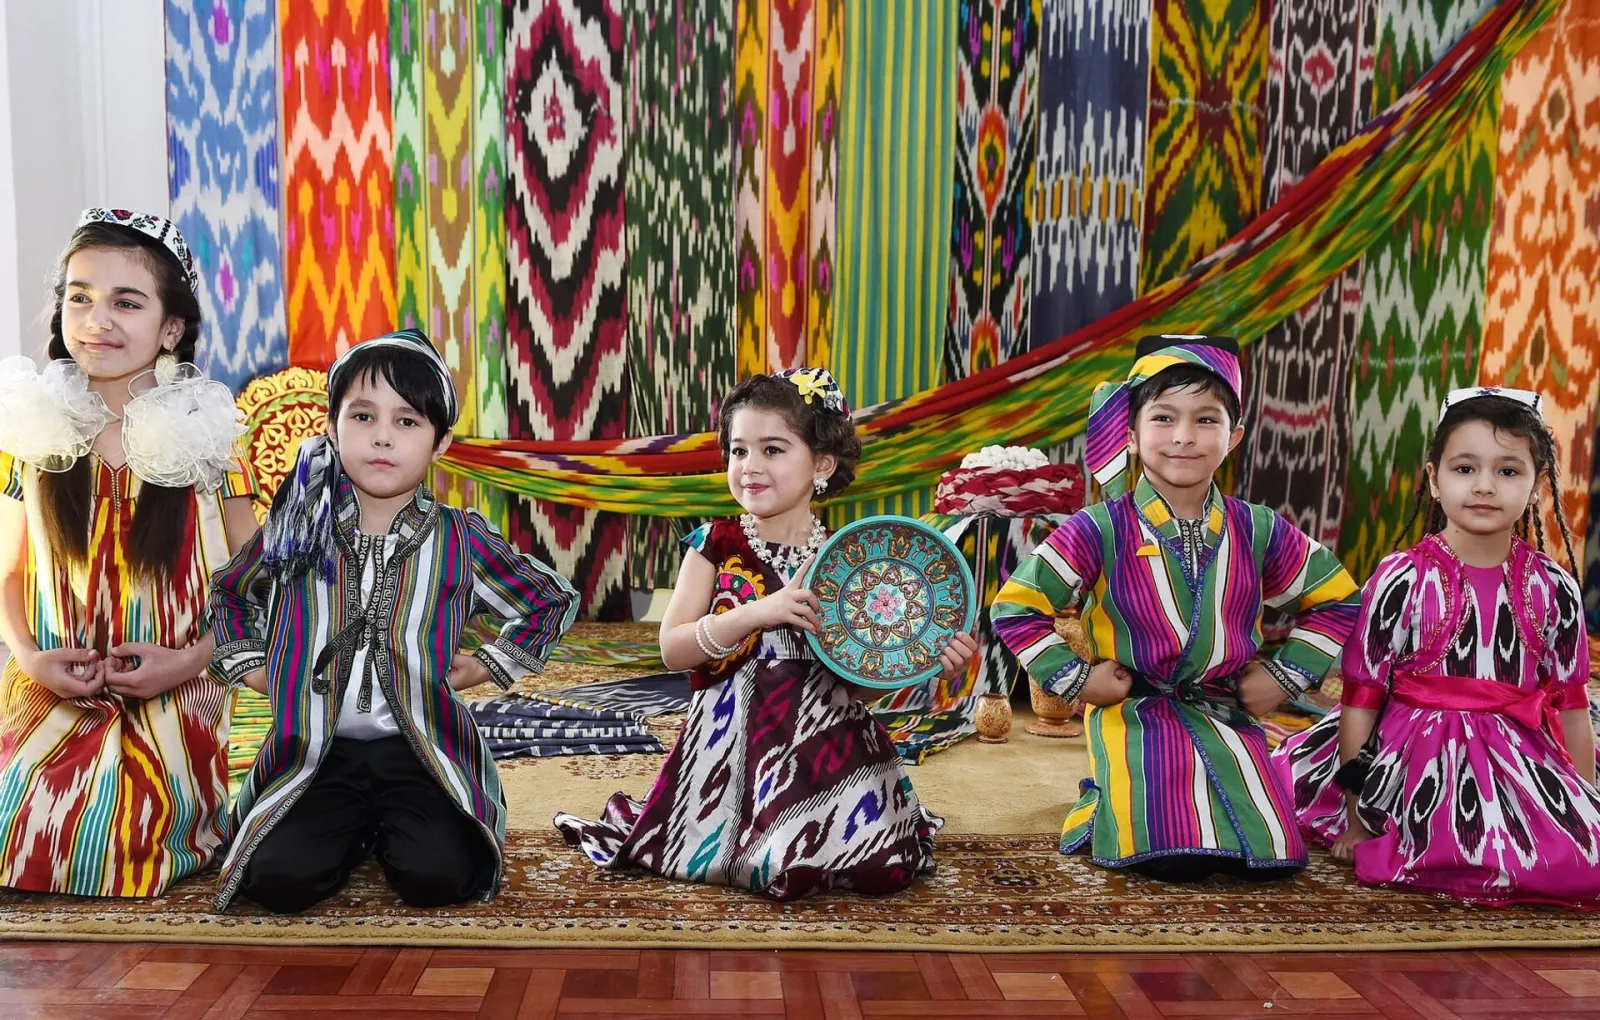 Министерство культуры удалило анонс праздника таджикской культуры в Татарстане